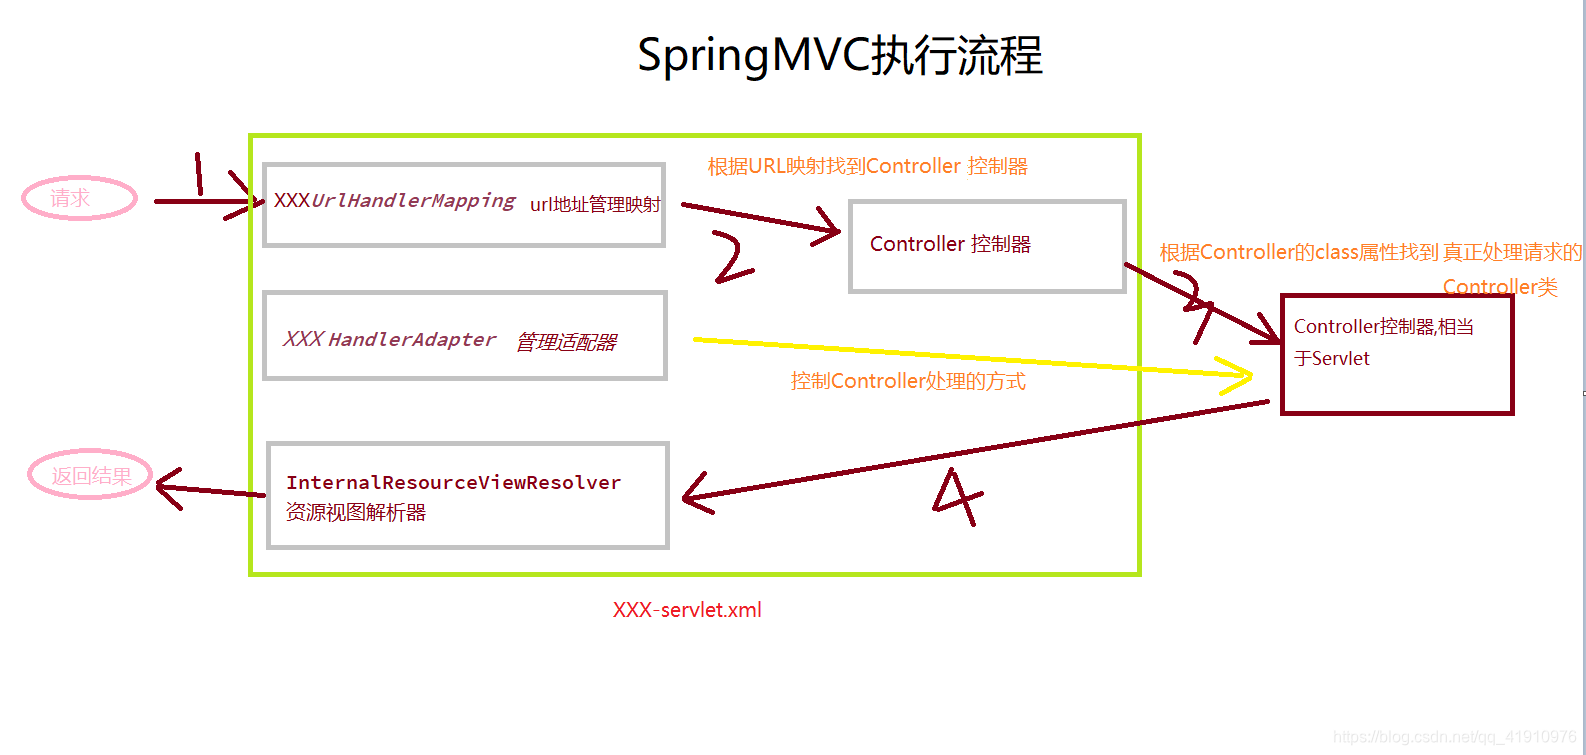 SpringMVC入门精讲javaqq41910976的博客-